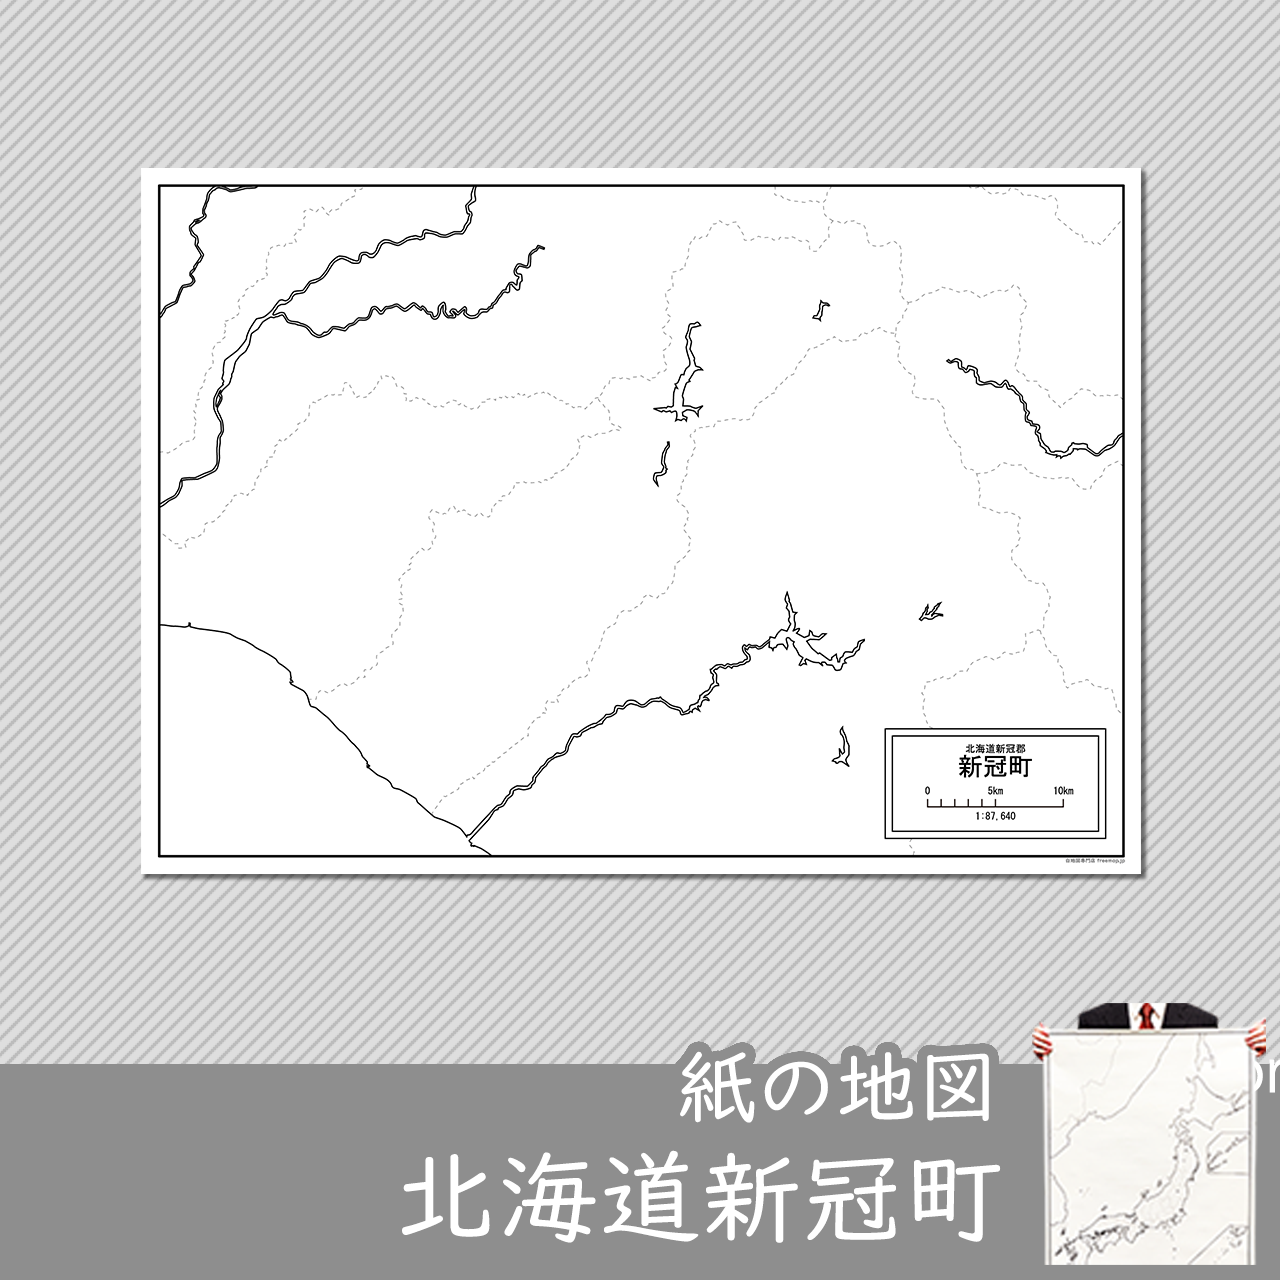 新冠町の紙の白地図のサムネイル